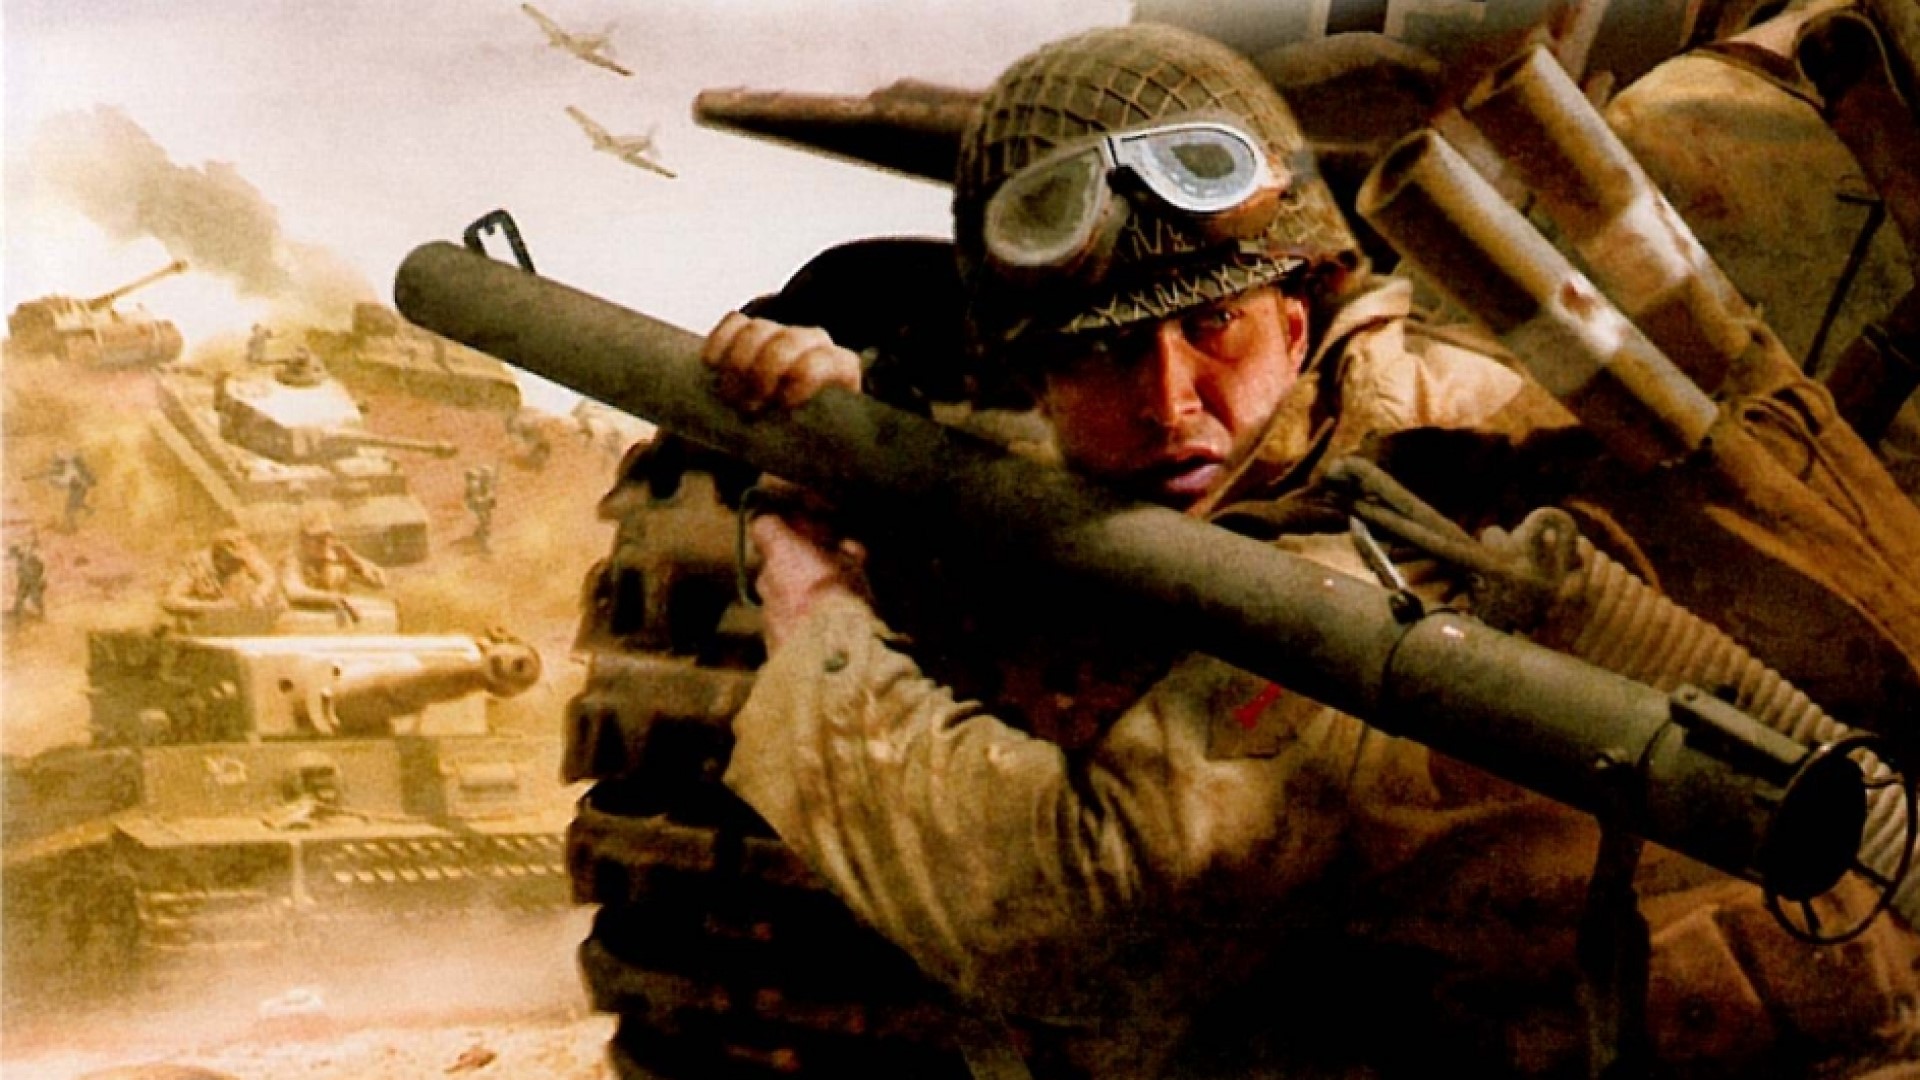 Medal of Honor: Allied Assault: Breakthrough